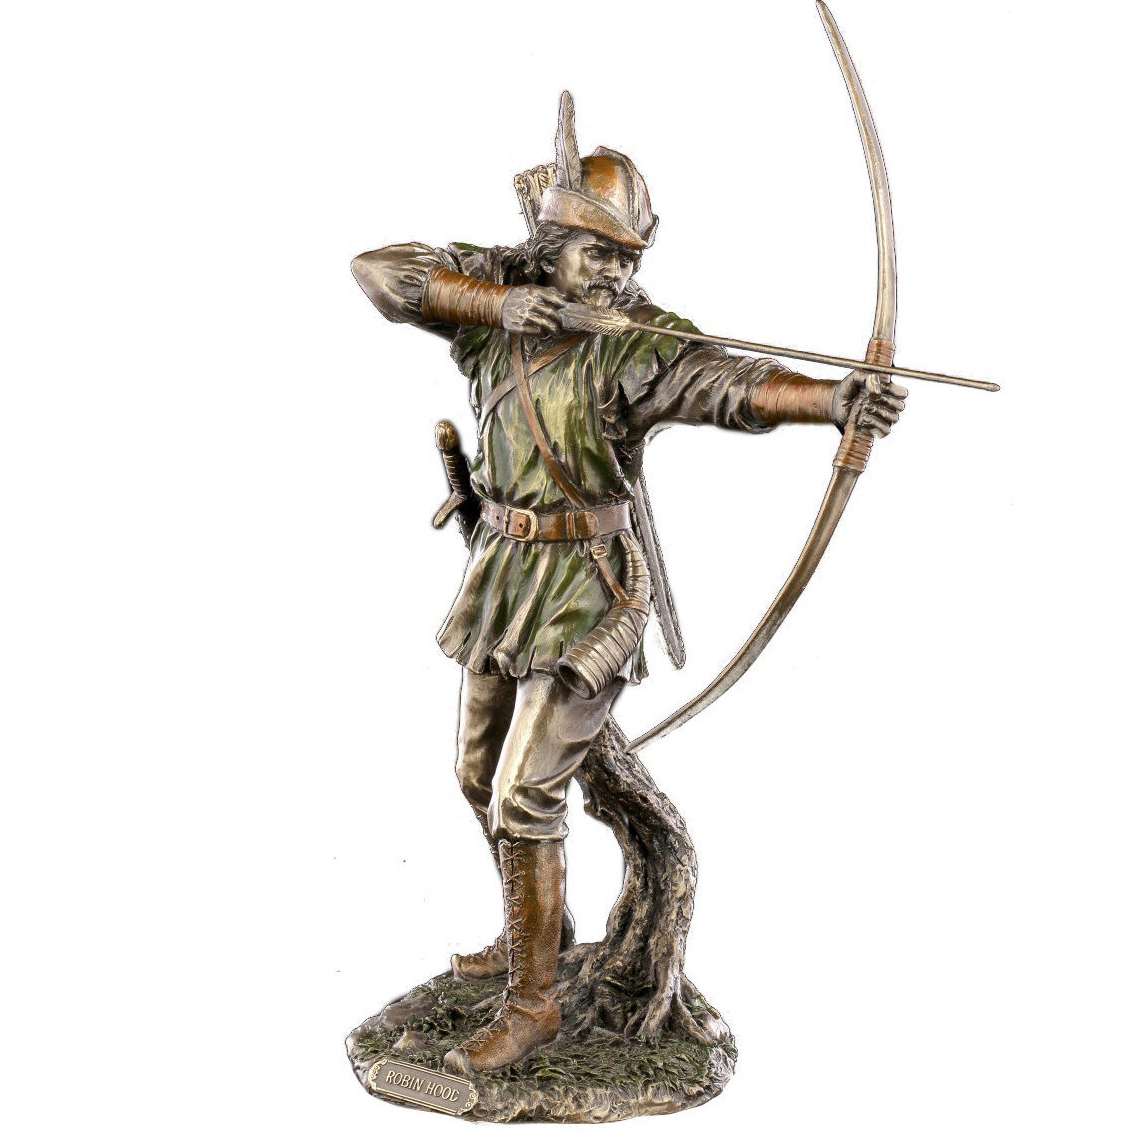 Robin Hood Sculpture